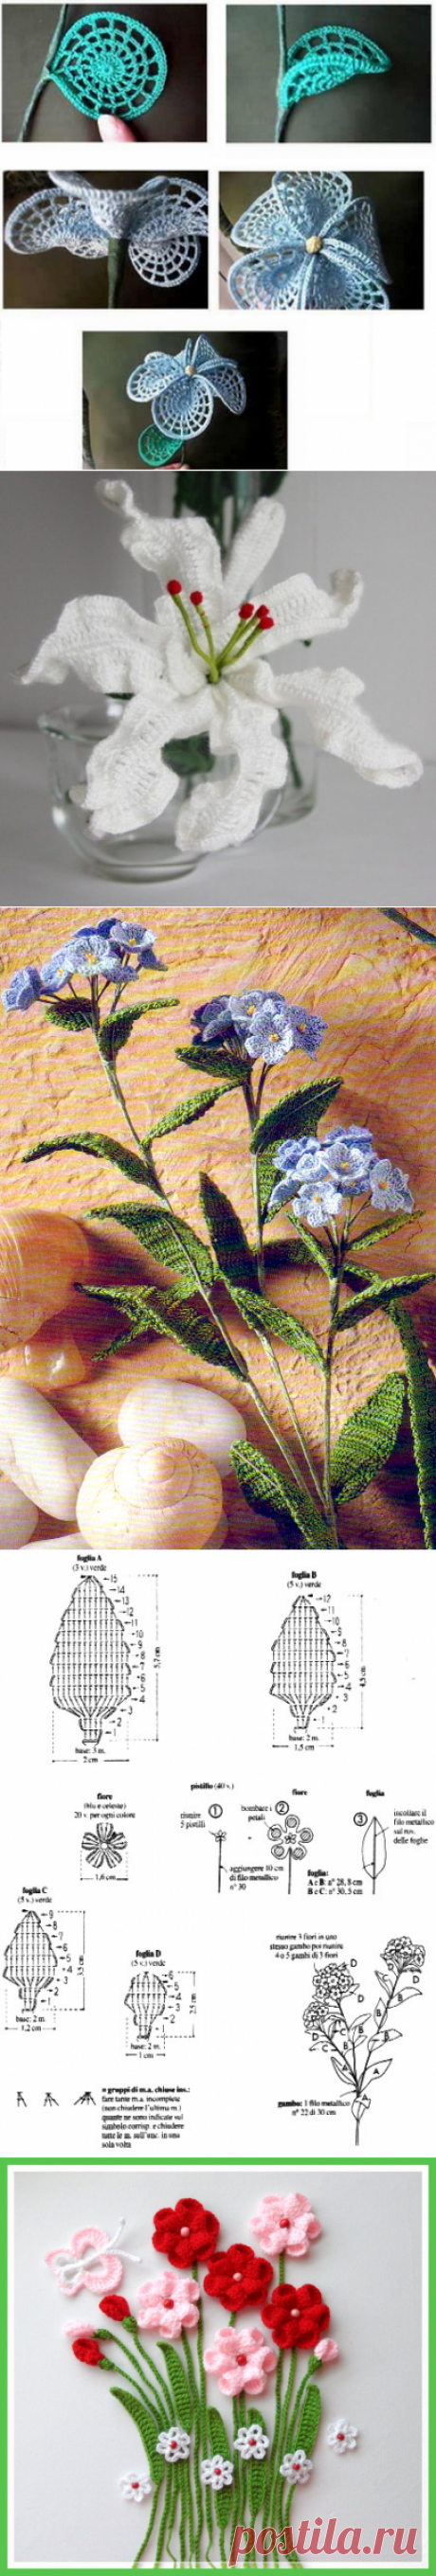 Нежные цветы, связанные крючком — Рукоделие